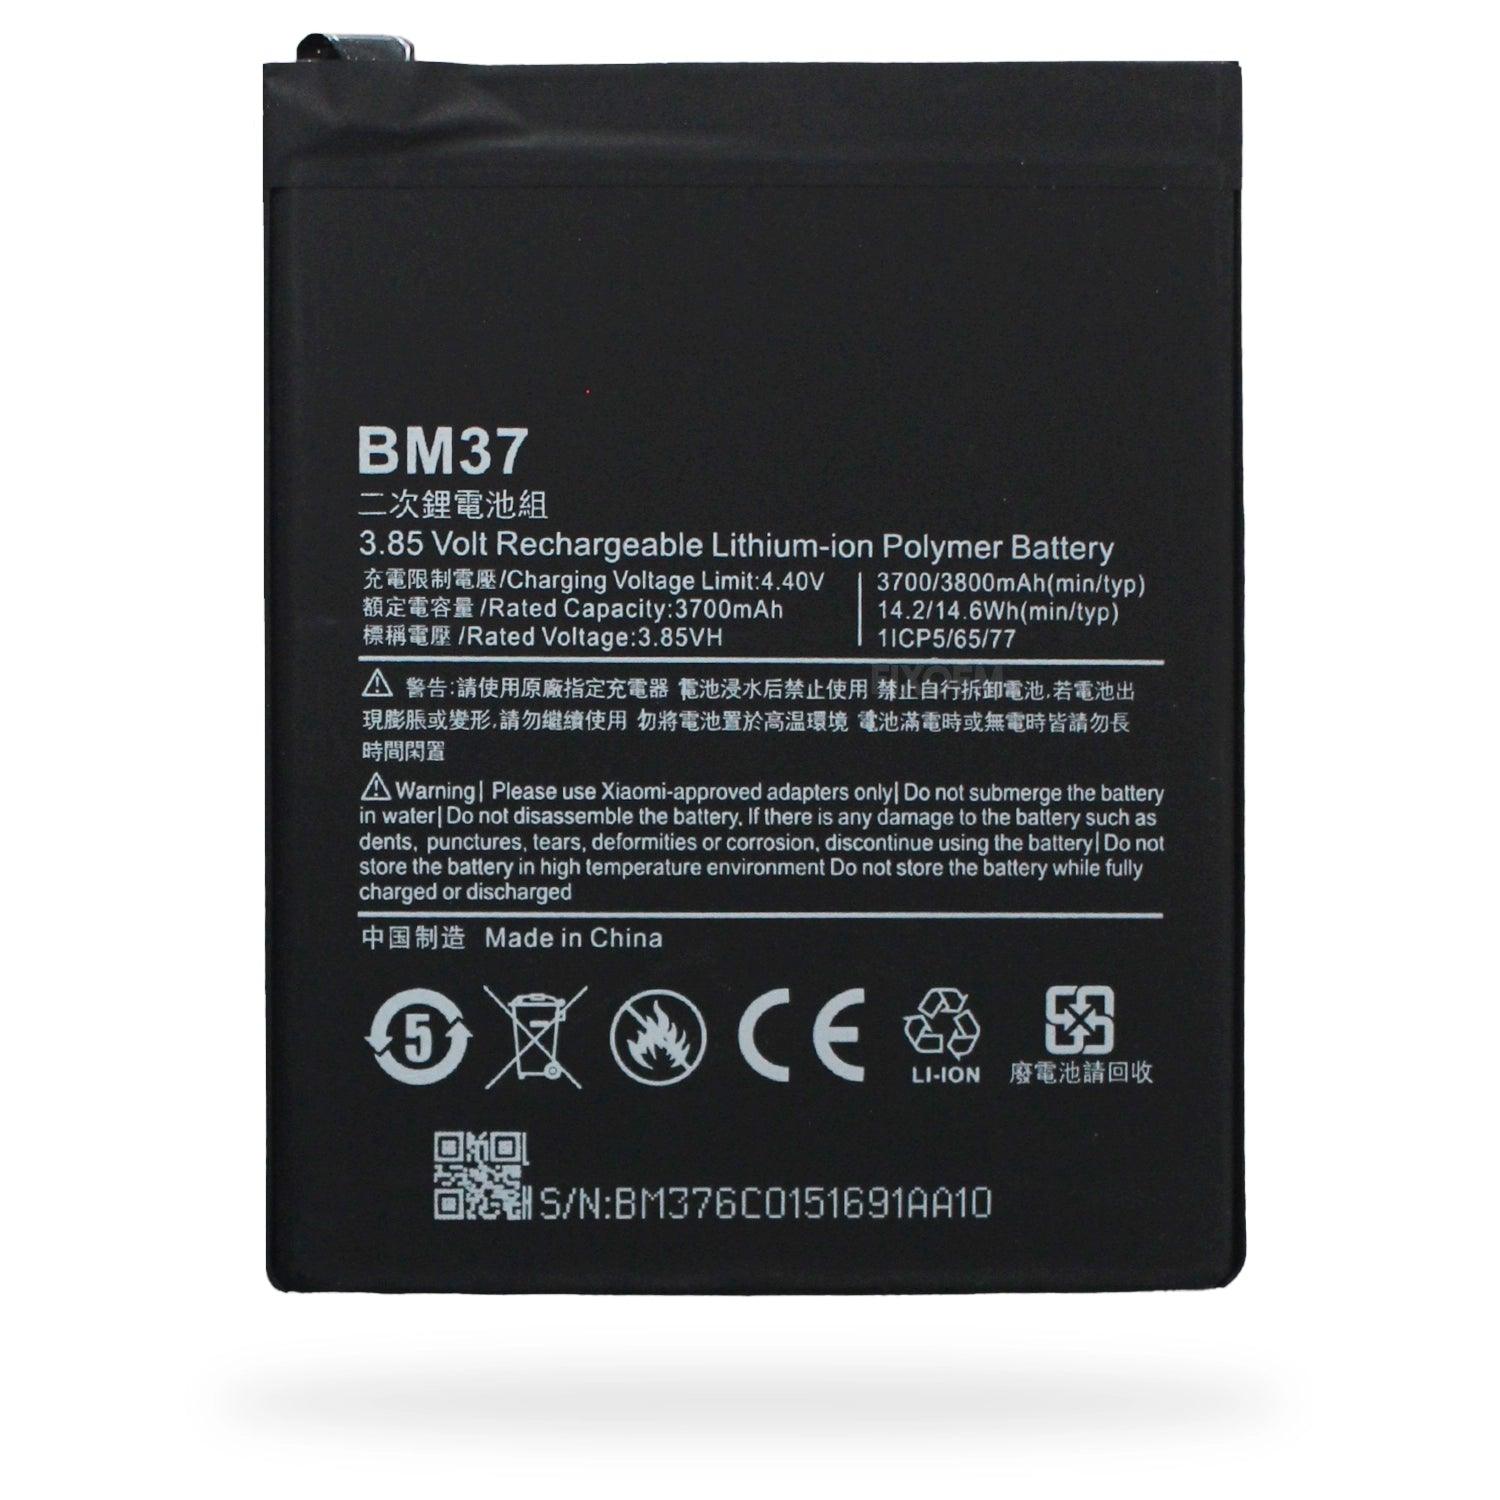 Bateria Xiaomi Mi 5S / Mi 5S Plus 2015711 2016070 Bm37 a solo $ 140.00 Refaccion y puestos celulares, refurbish y microelectronica.- FixOEM